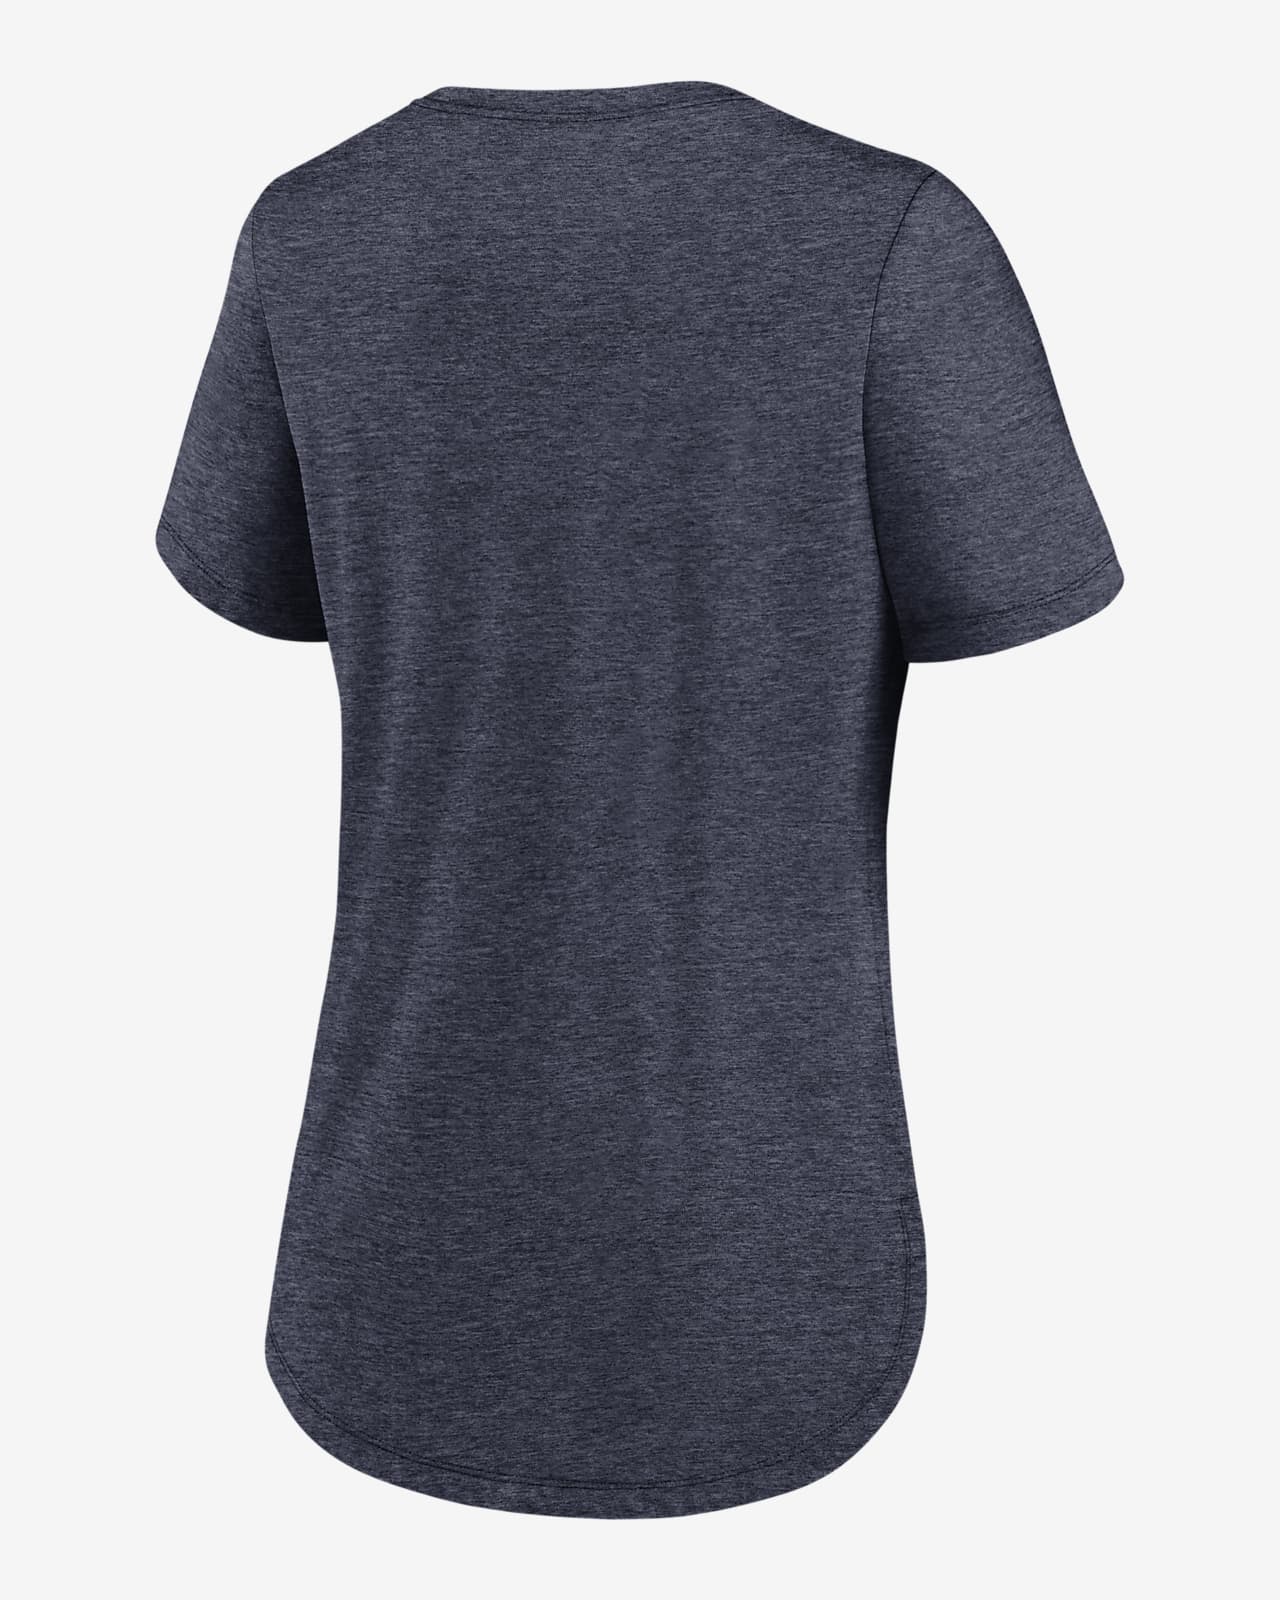 Nike Local (NFL Denver Broncos) Women's T-Shirt